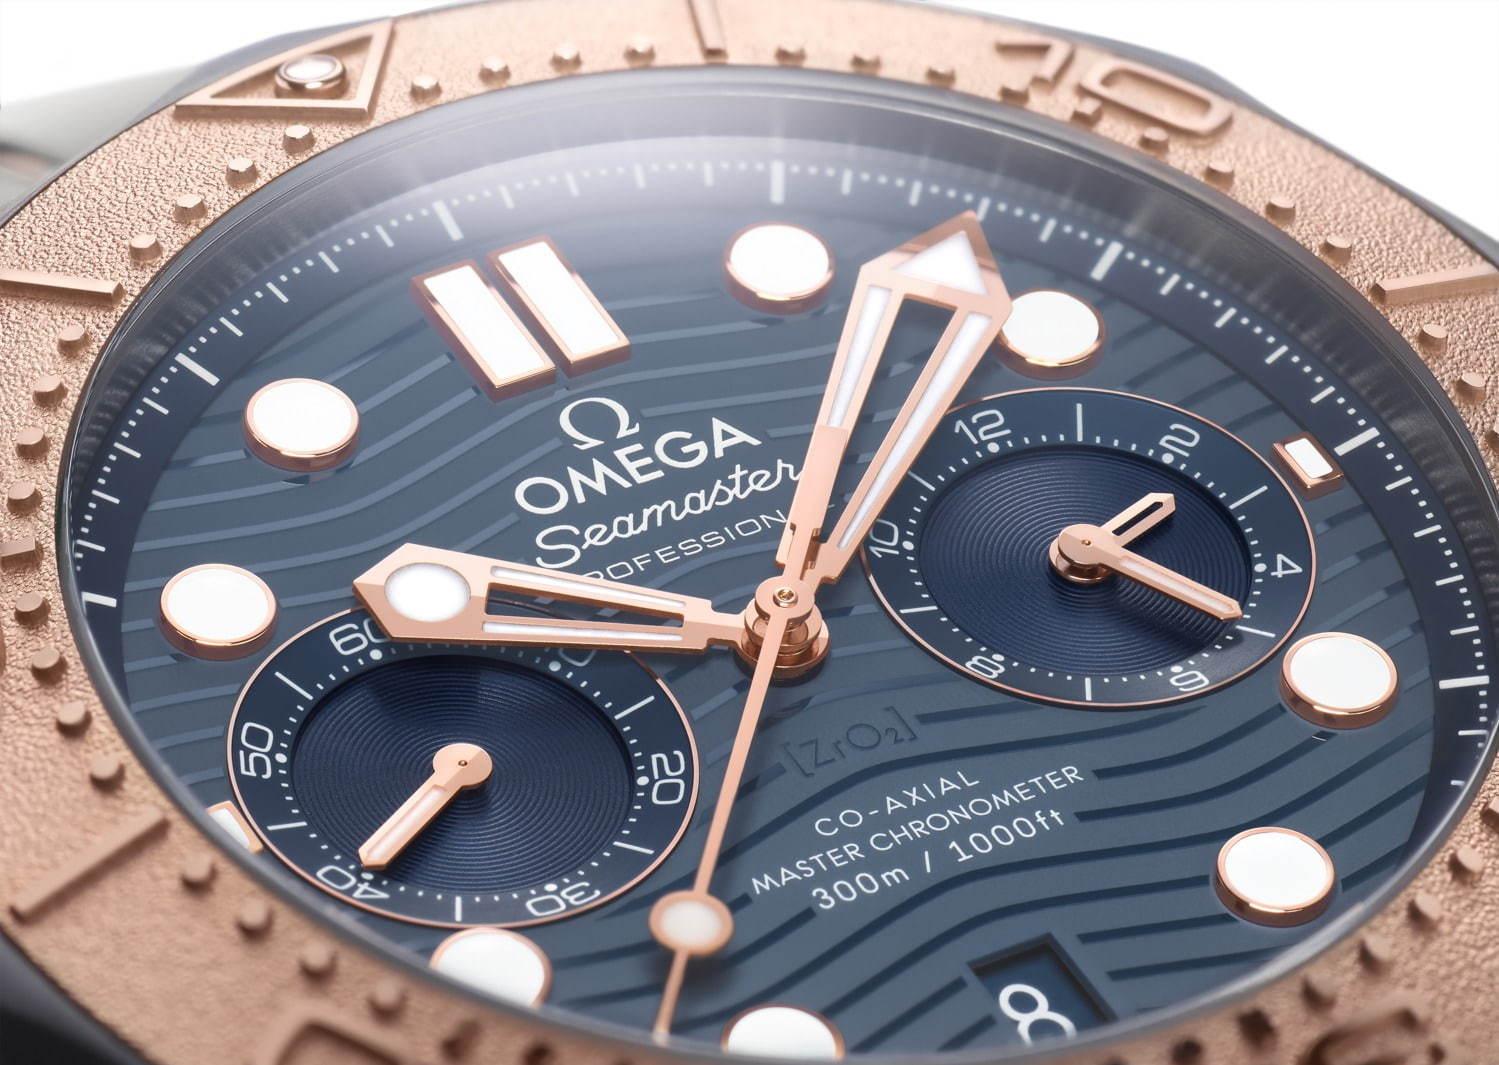 オメガの腕時計「シーマスター」希少メタル素材“タンタリウム”など3つのメタルを使用した新作 コピー